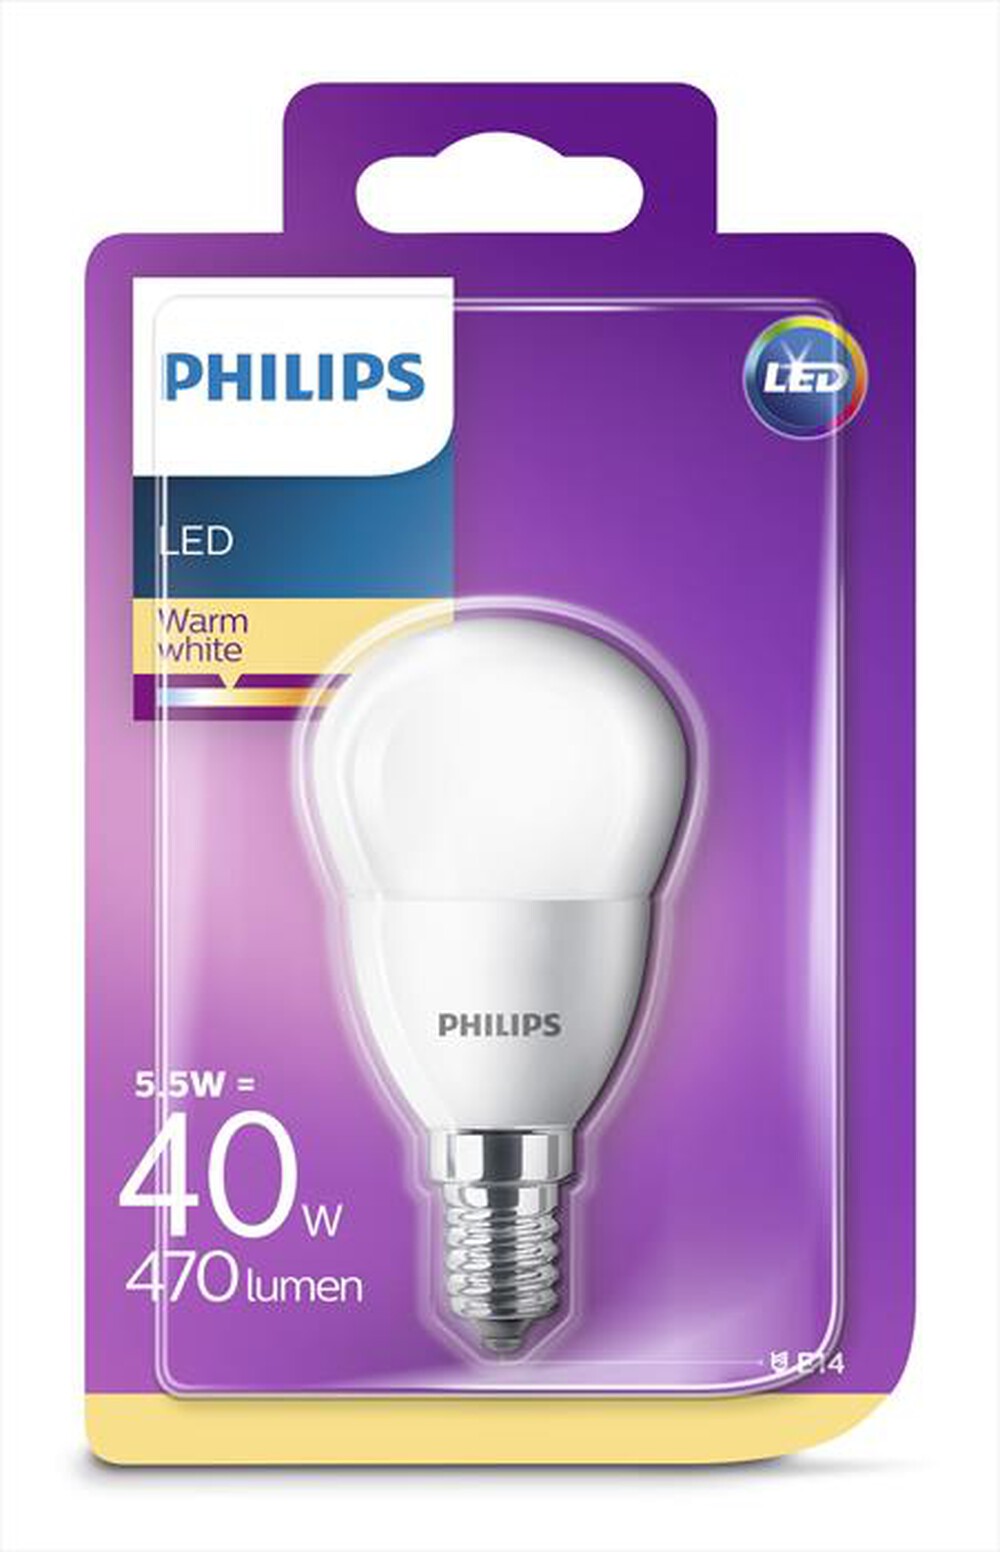 "PHILIPS - LEDSF40SME14 5,5W E14 - Luce bianca calda"